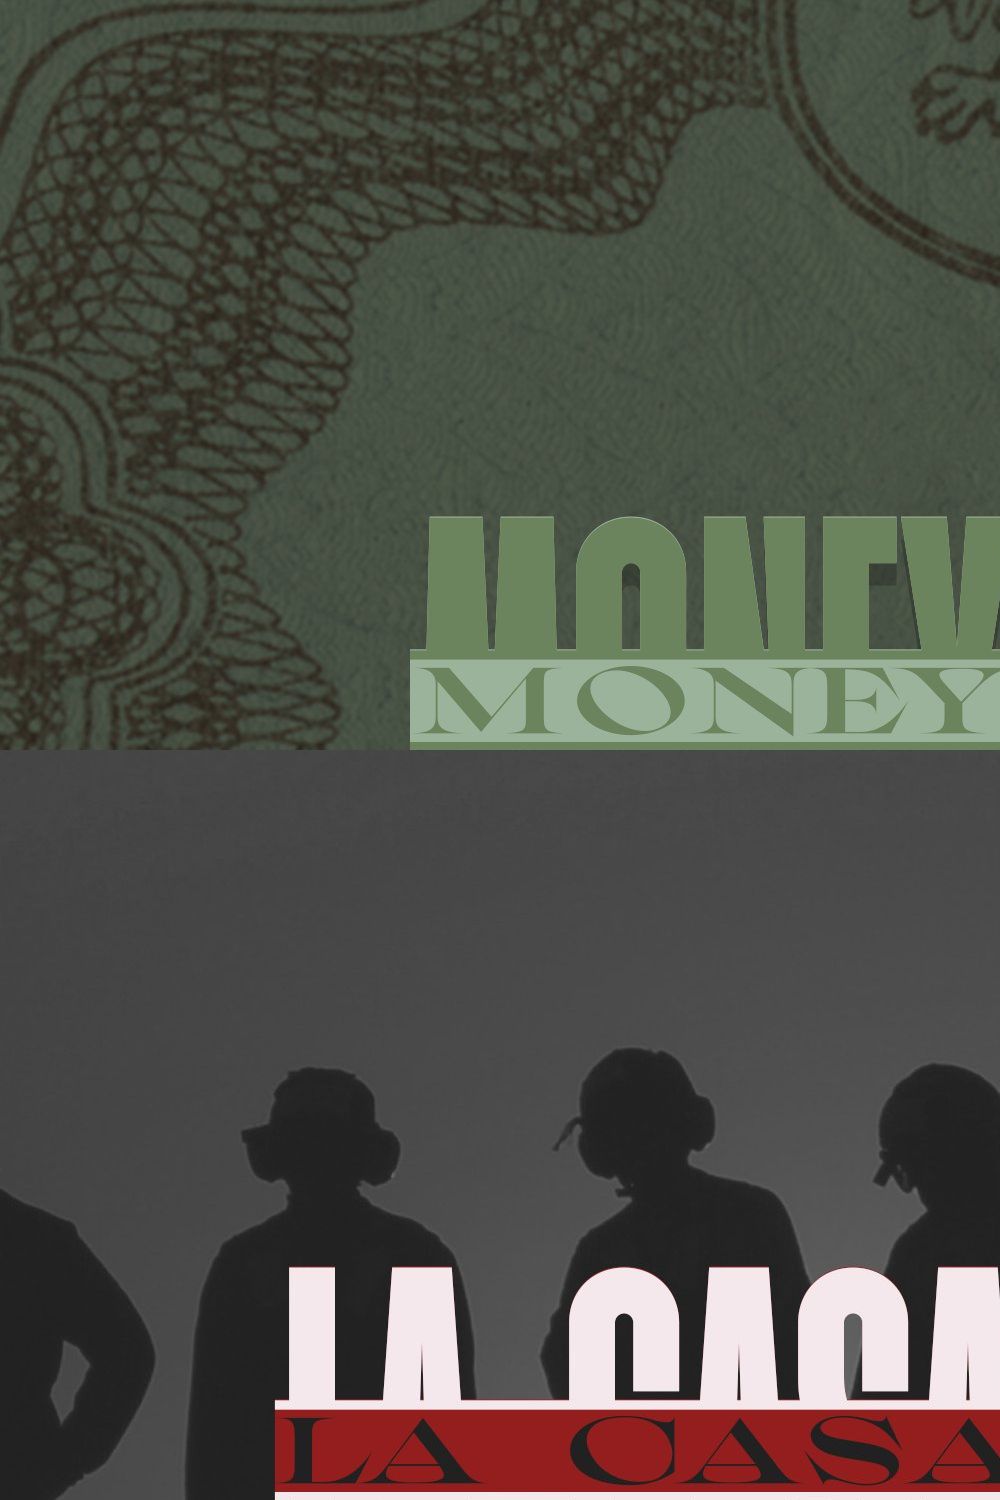 Money Machine – Six Cash Typefaces pinterest preview image.